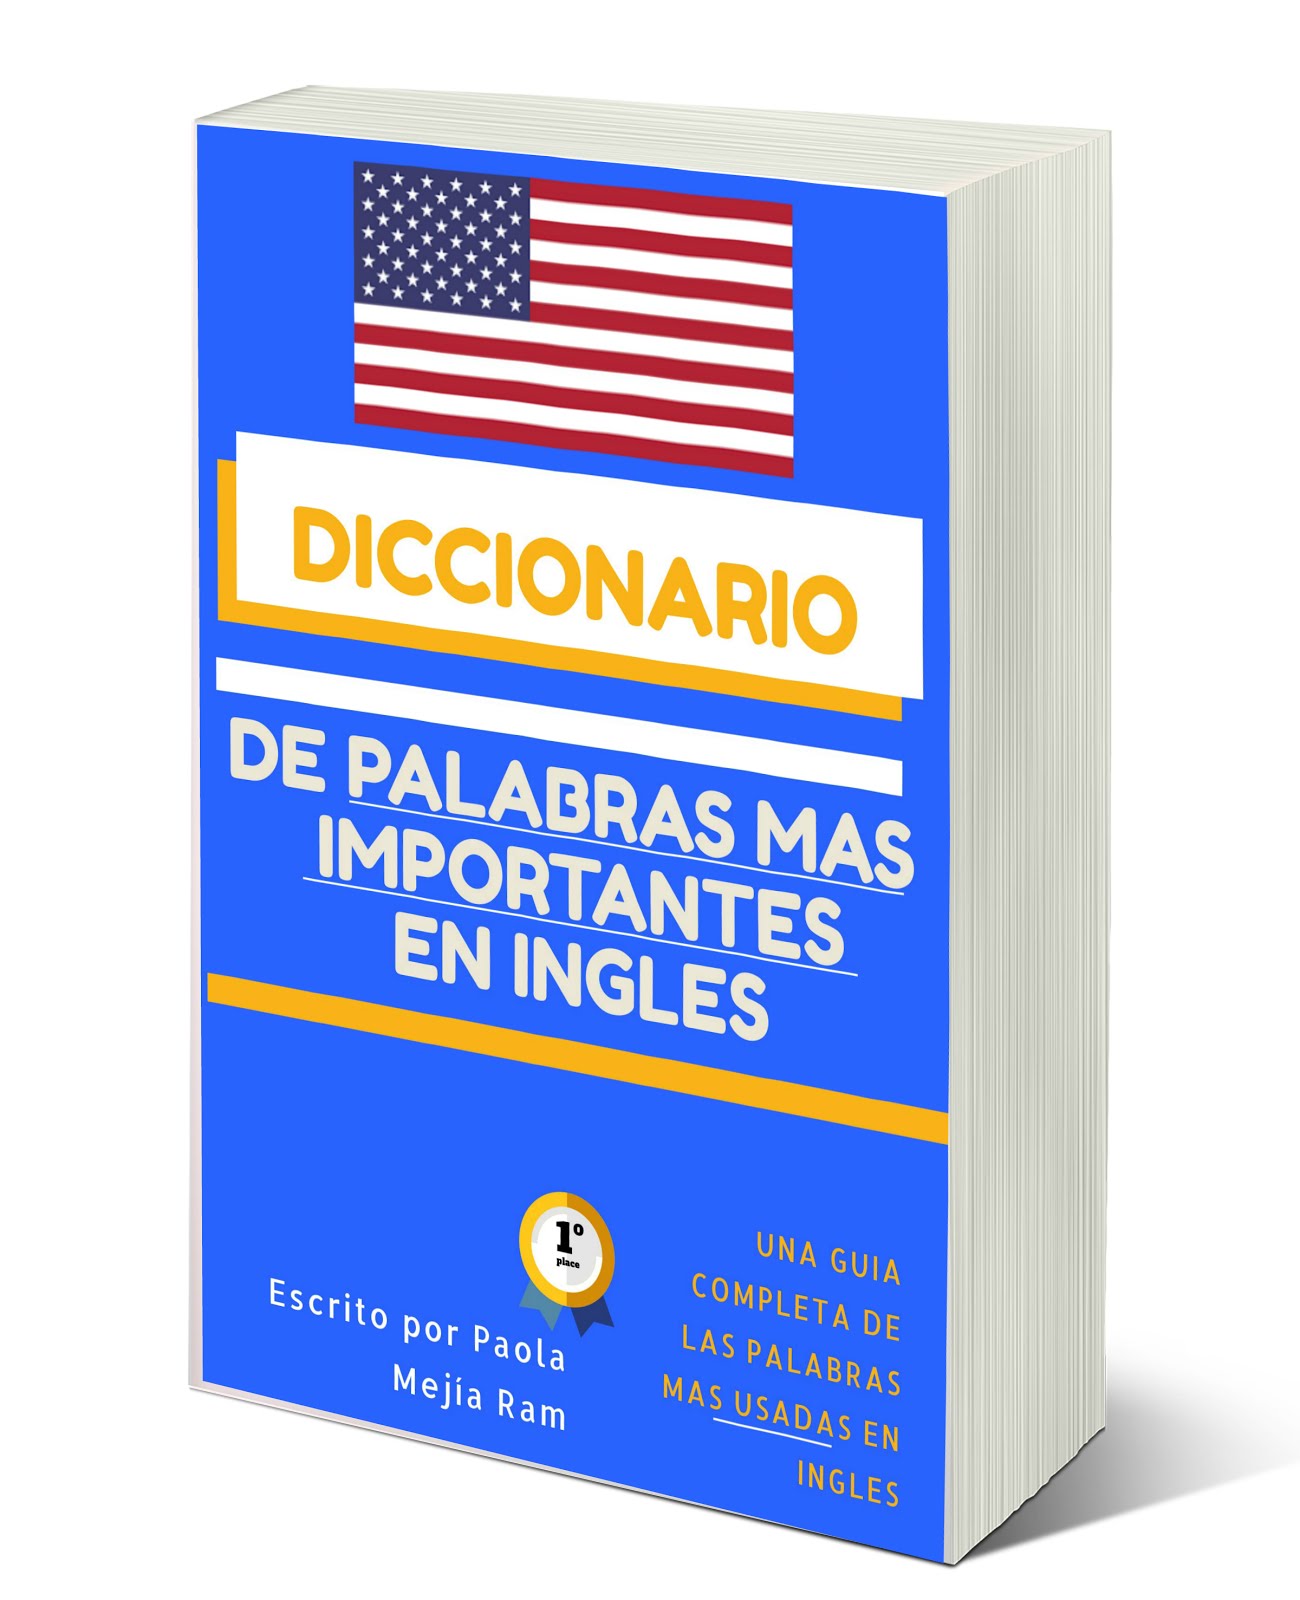 DICCIONARIO DE LAS PALABRAS MAS USADAS EN INGLÉS